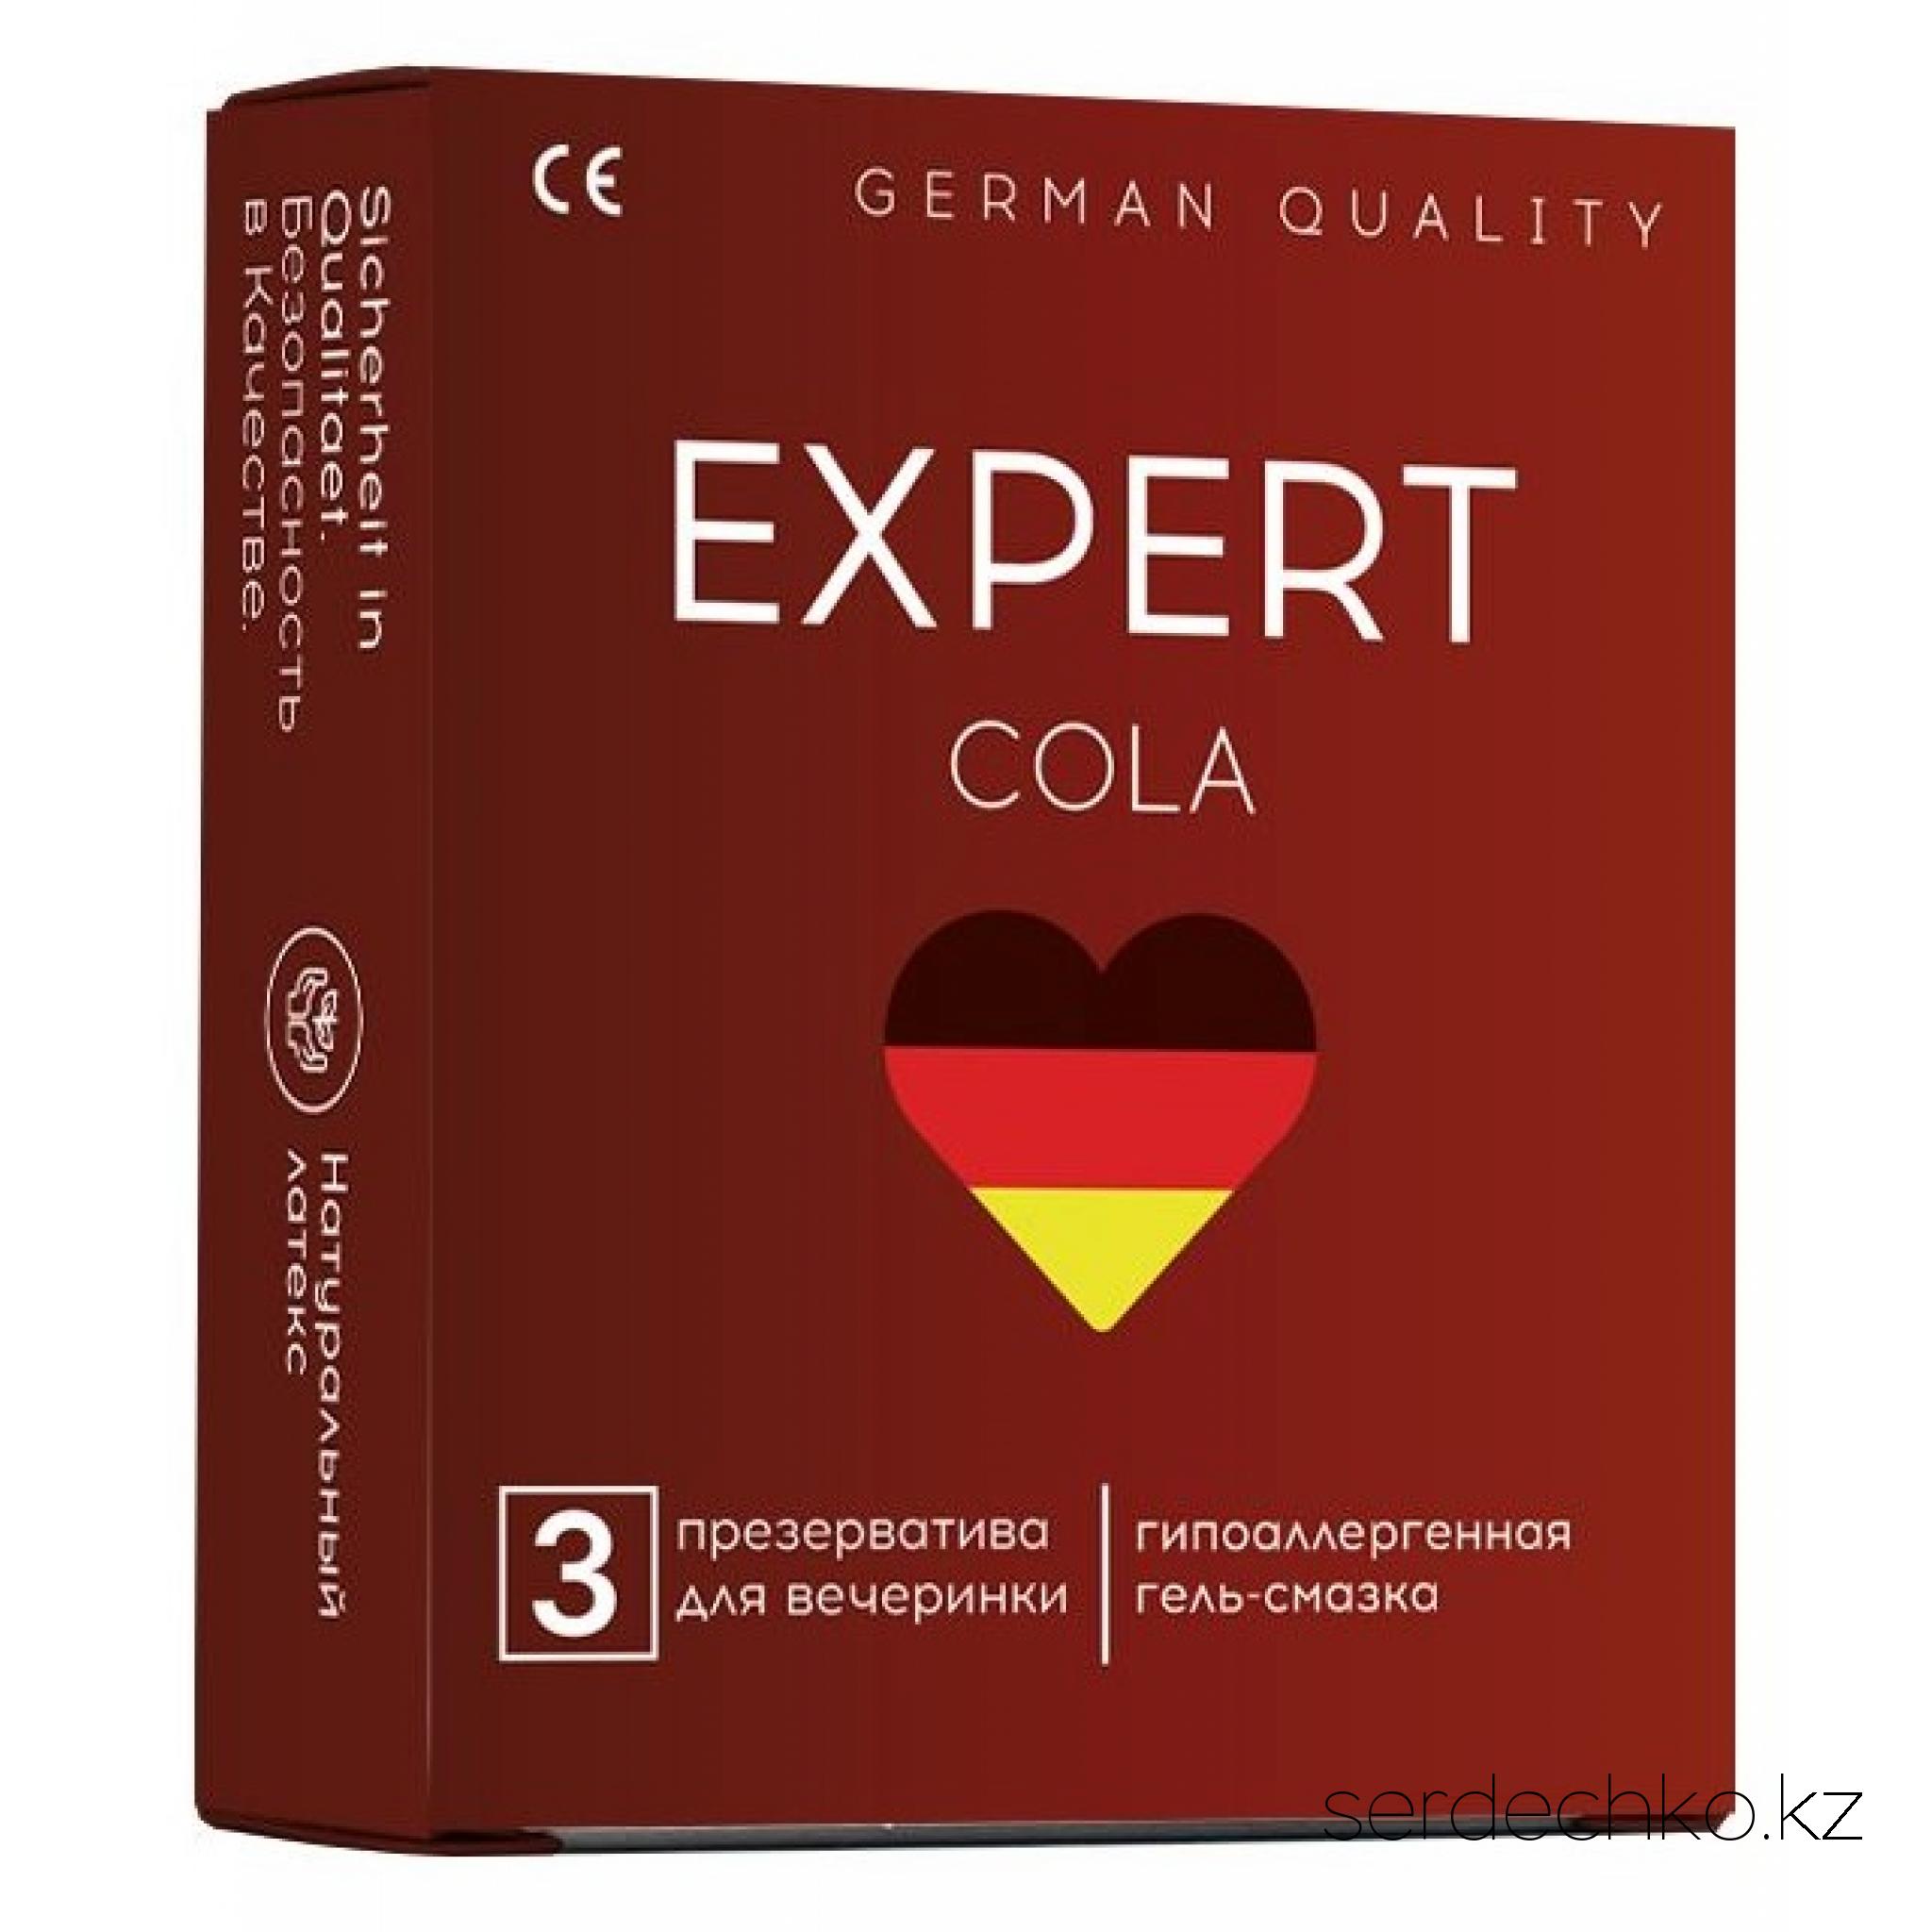 ПРЕЗЕРВАТИВЫ EXPERT COLA № 3 (С АРОМАТОМ КОЛЫ), 3 штуки, 
	Cola - Гладкие латексные презервативы,  обработанные силиконовой смазкой с ароматом  колы.
